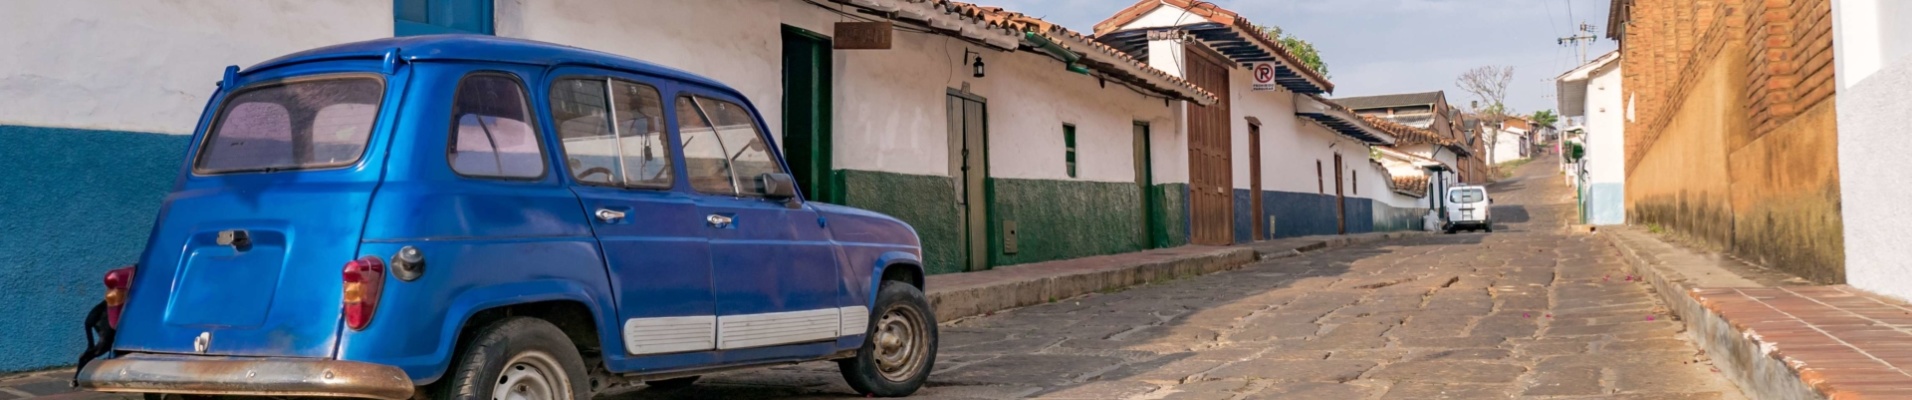 voiture-ruelle-barichara-santander-colombie